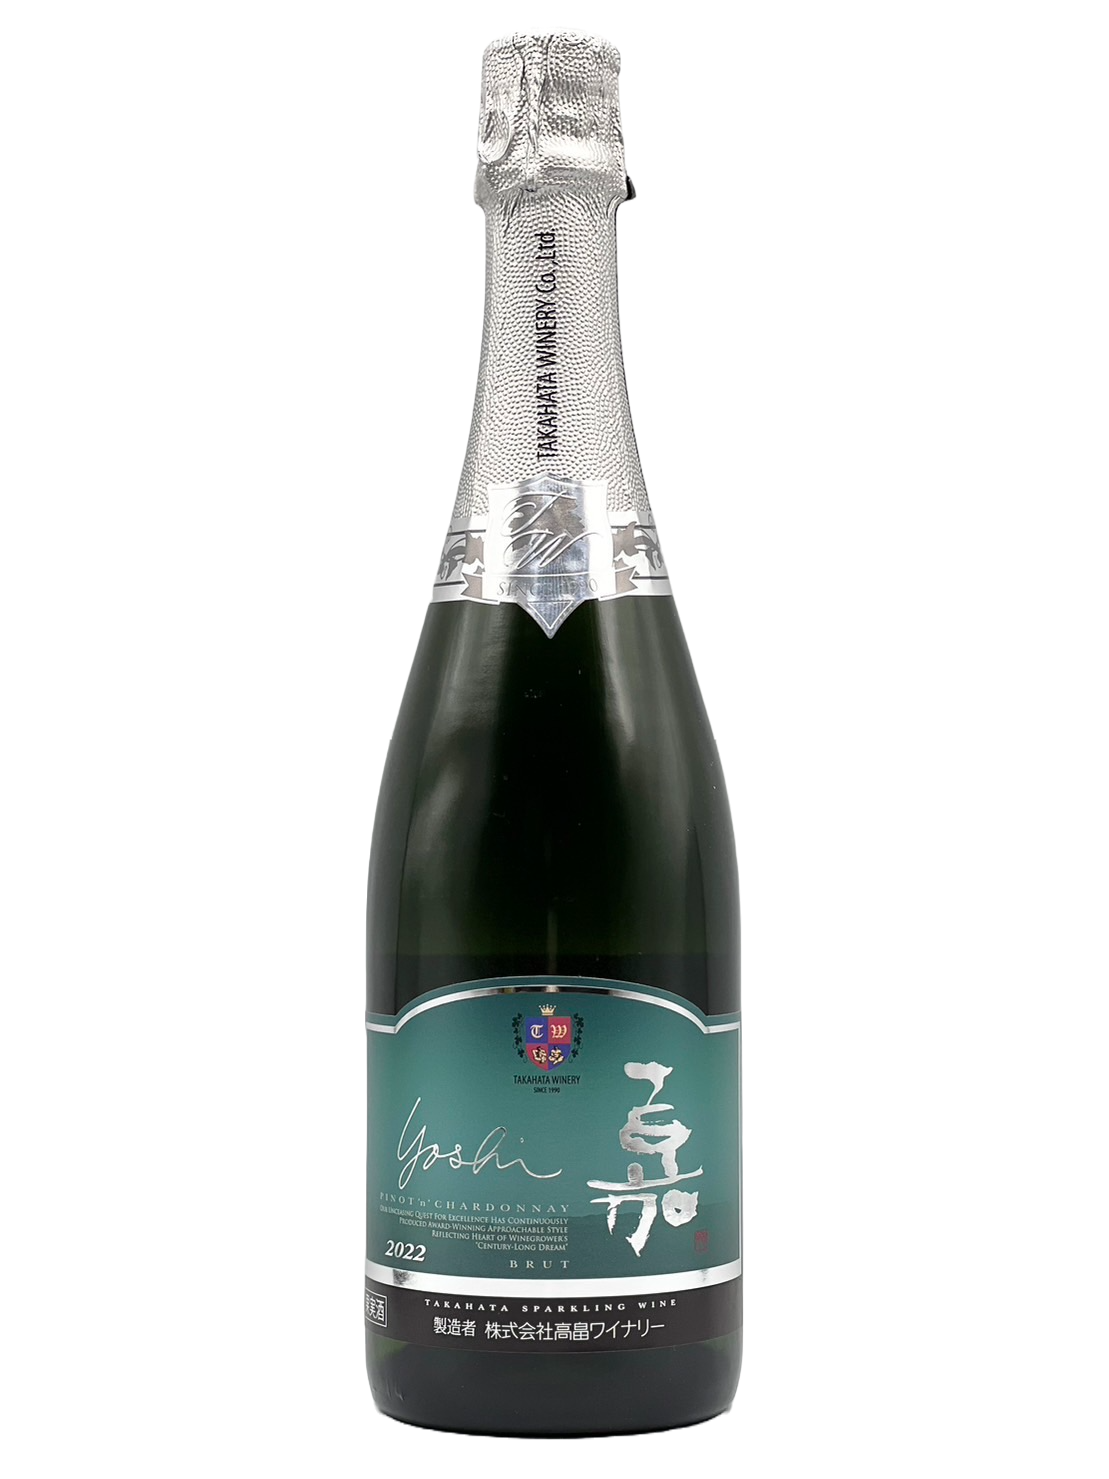 Ka-yoshi-Sparkling Pinot Chardonnay 2022